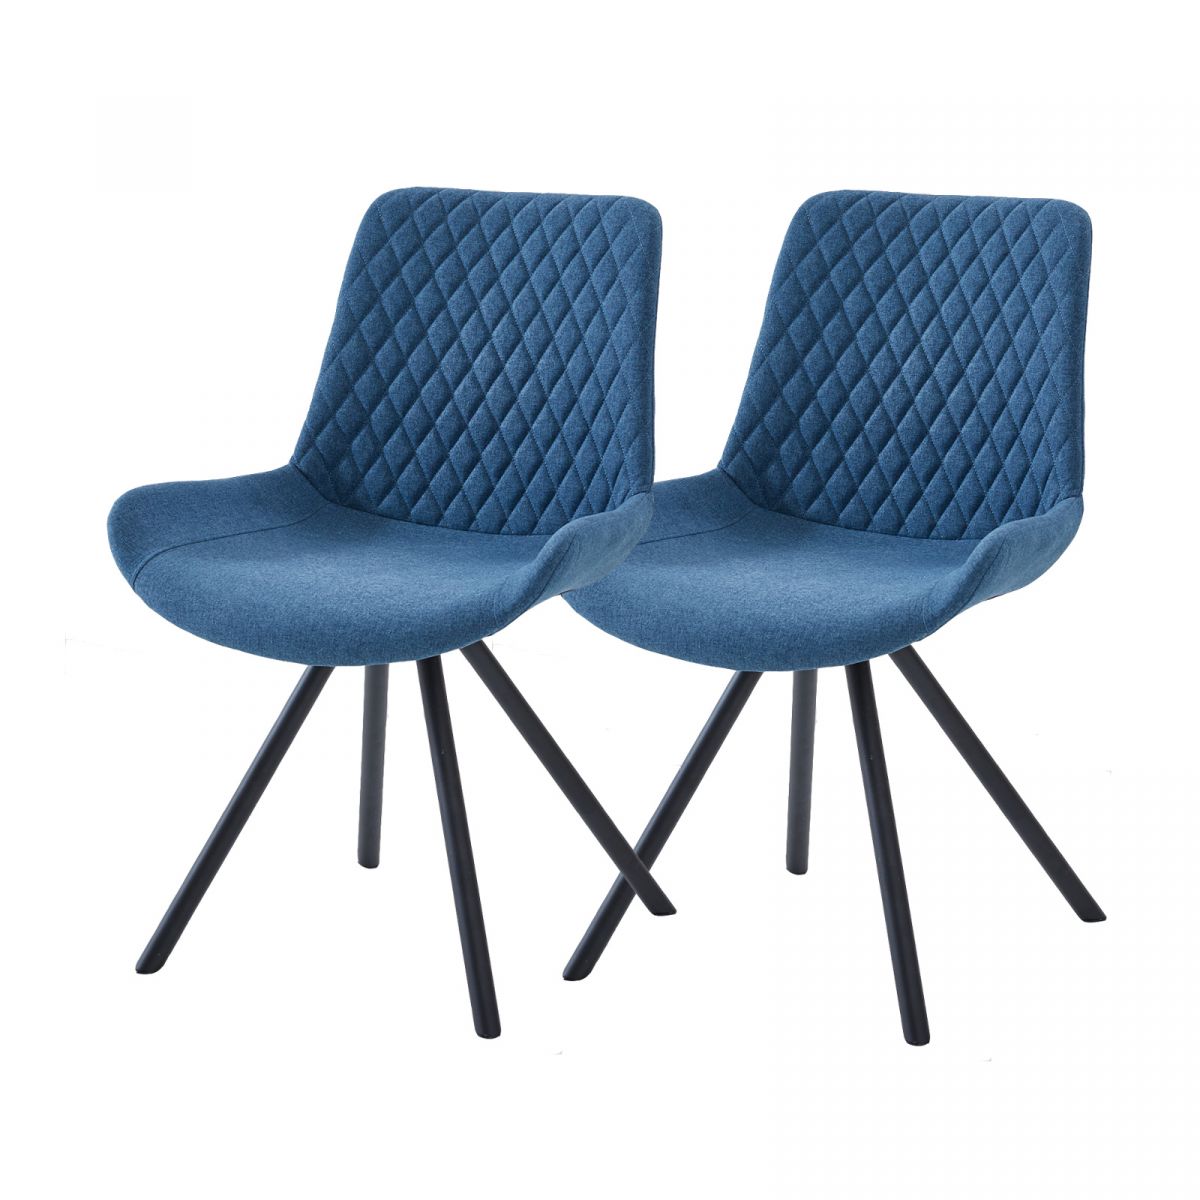 2 x Stuhl Meran in blau und Metallgestell schwarz Esszimmerstuhl 2er Set